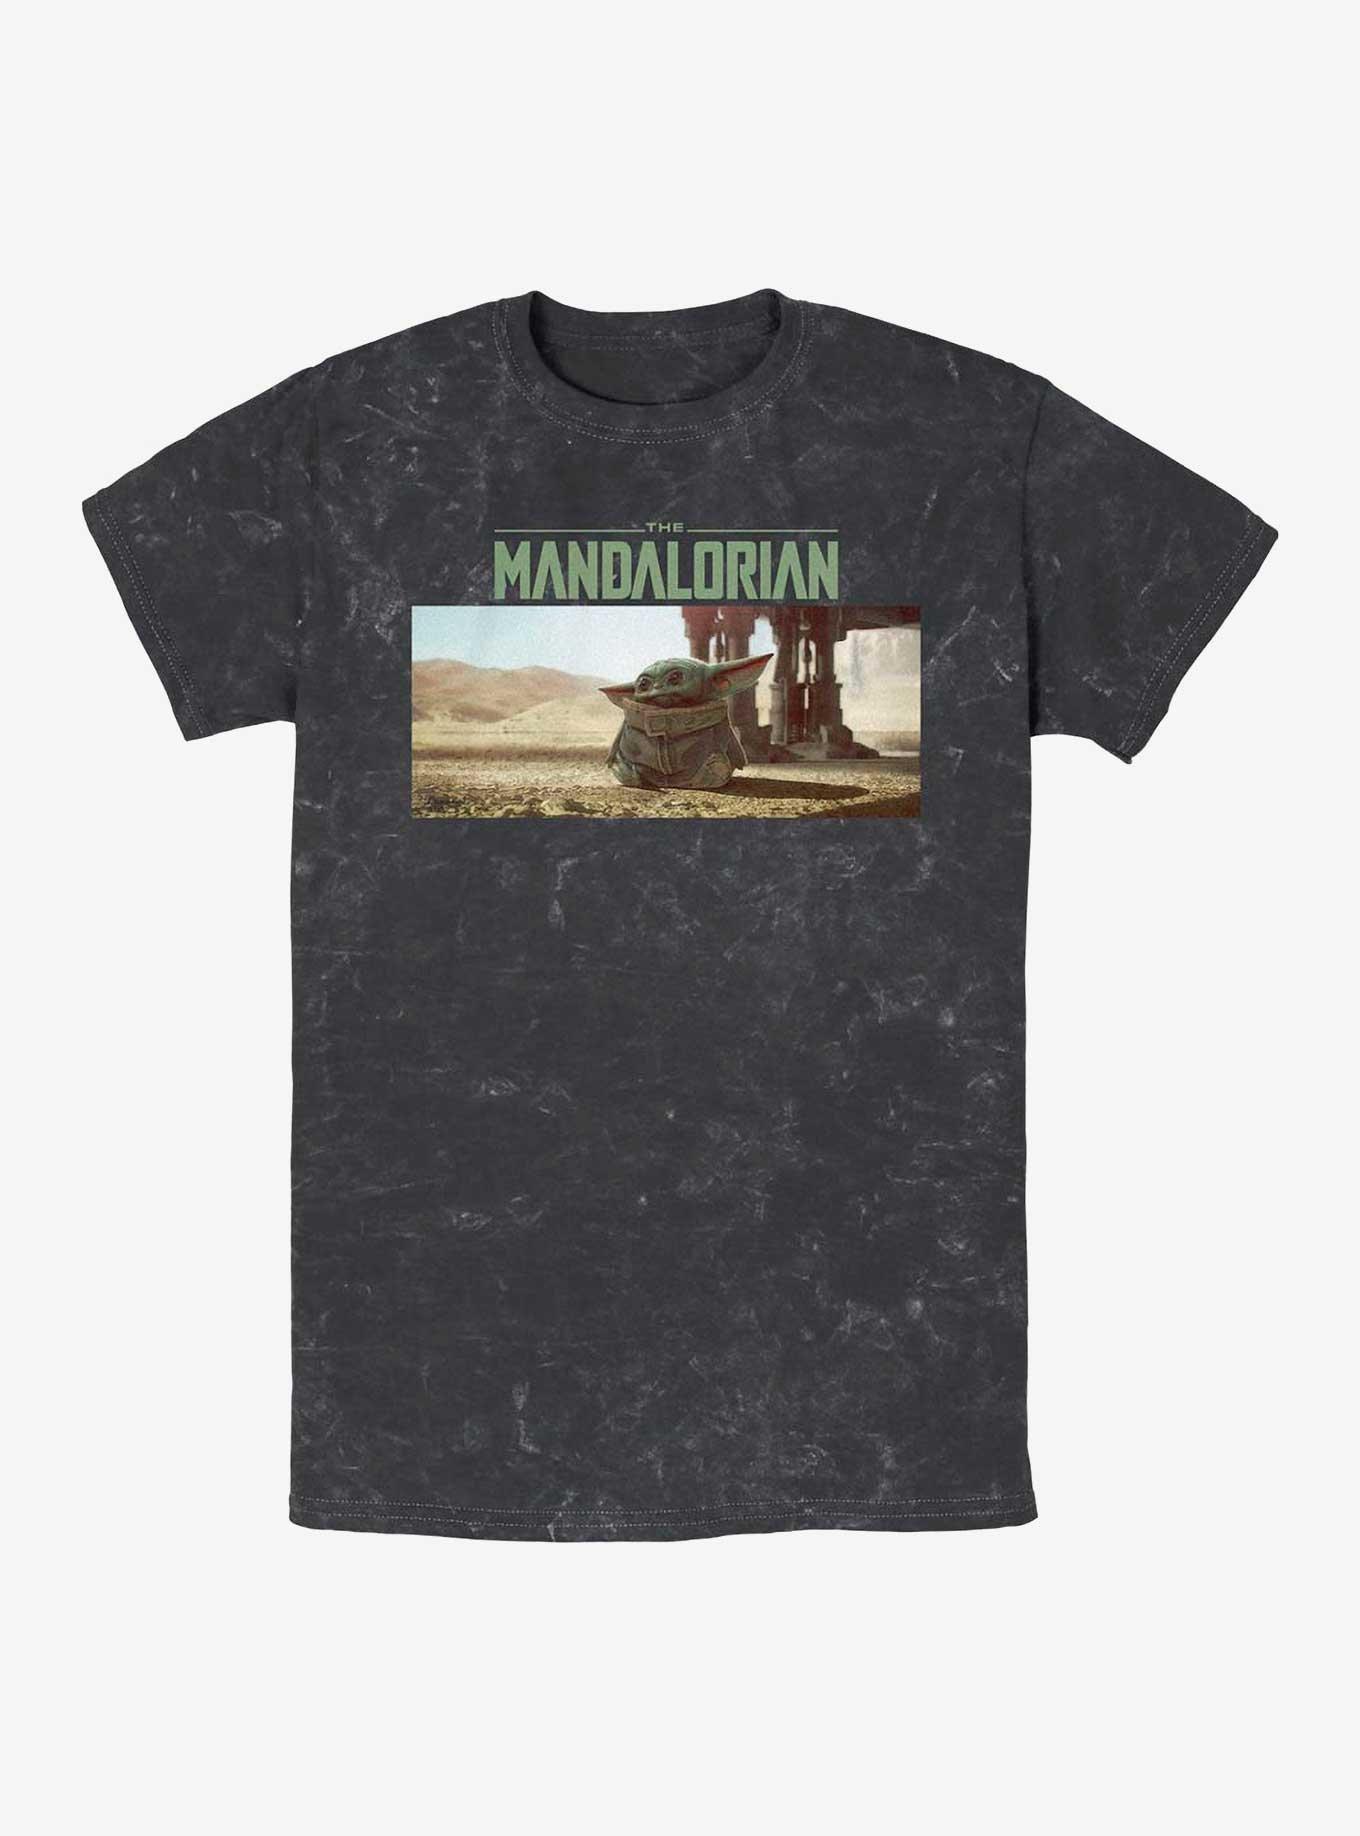 Star Wars The Mandalorian Still Looking Mineral Wash T-Shirt